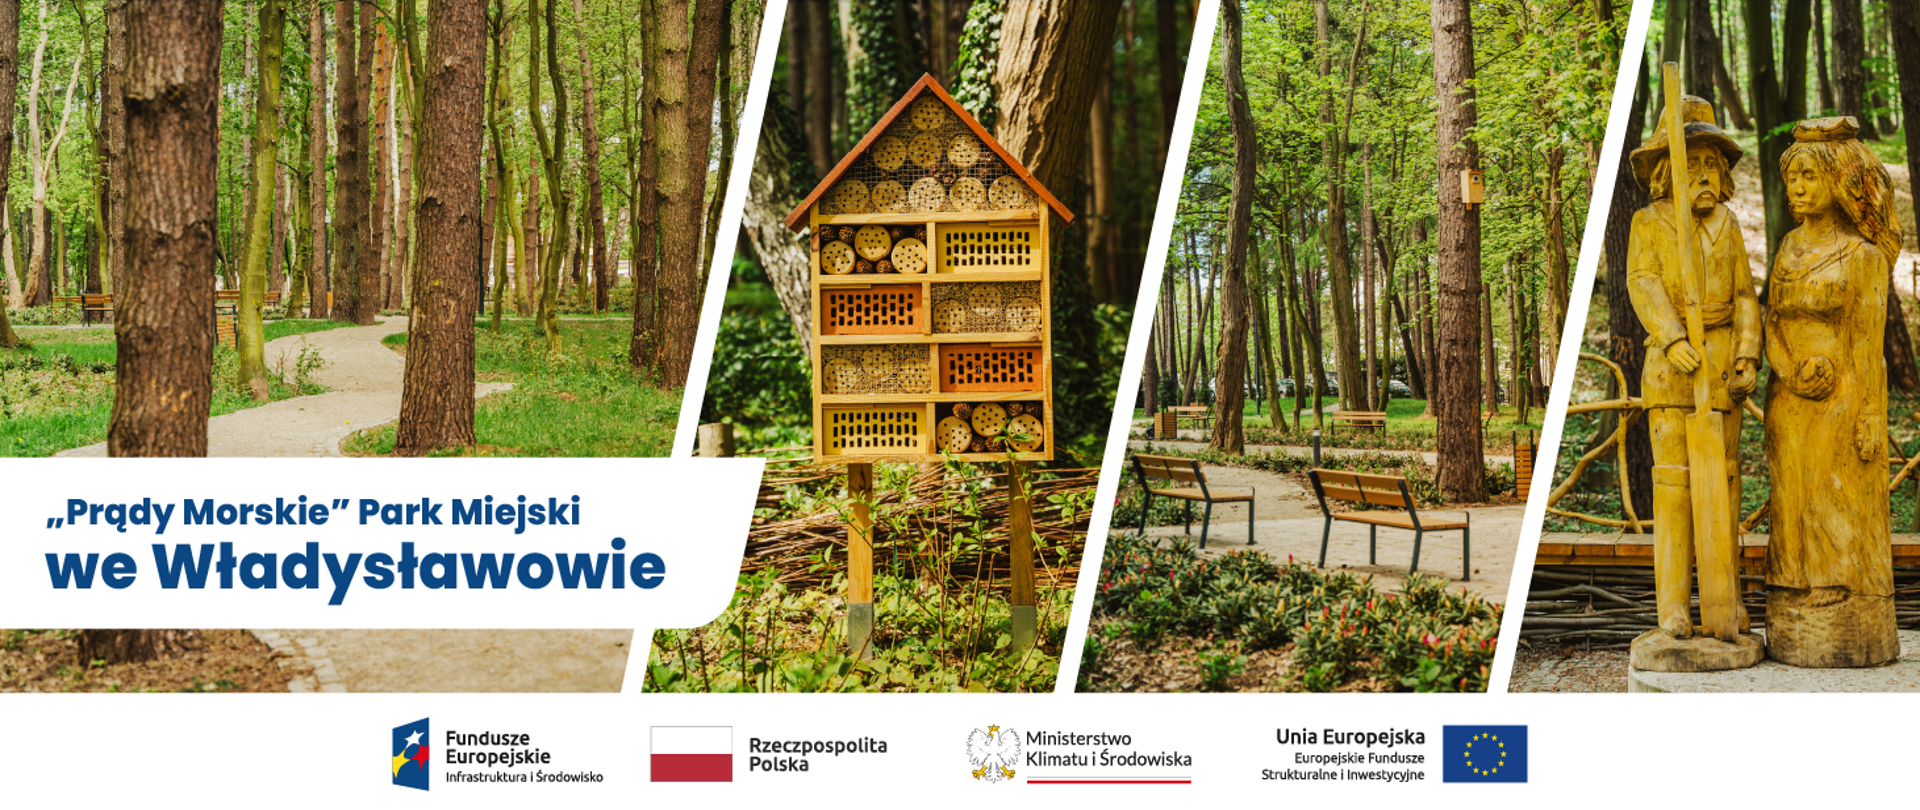 kolarz 4 zdjęć: na pierwszym alejka wśród drzew, na drugim drewniany domek dla owadów, na trzecim alejka wśród zieleni parkowej, ławeczki do siedzenia, na czwartym rzeźba z drewna dwóch postaci kobiety i mężczyzny. Na dole pod kolażem logo POIS 2014-2020